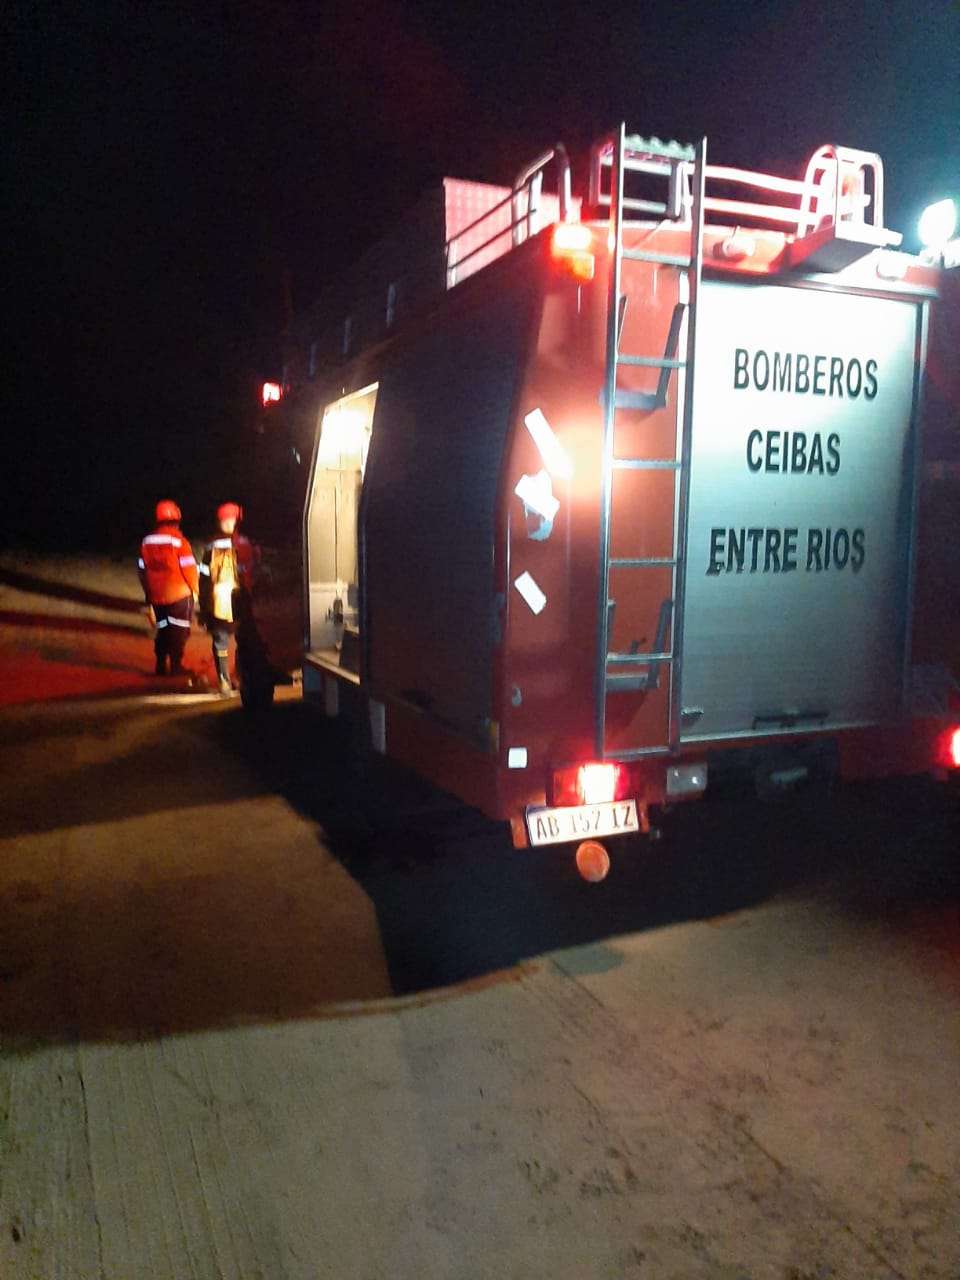 Bomberos de Ceibas adquirió una estación meteorológica